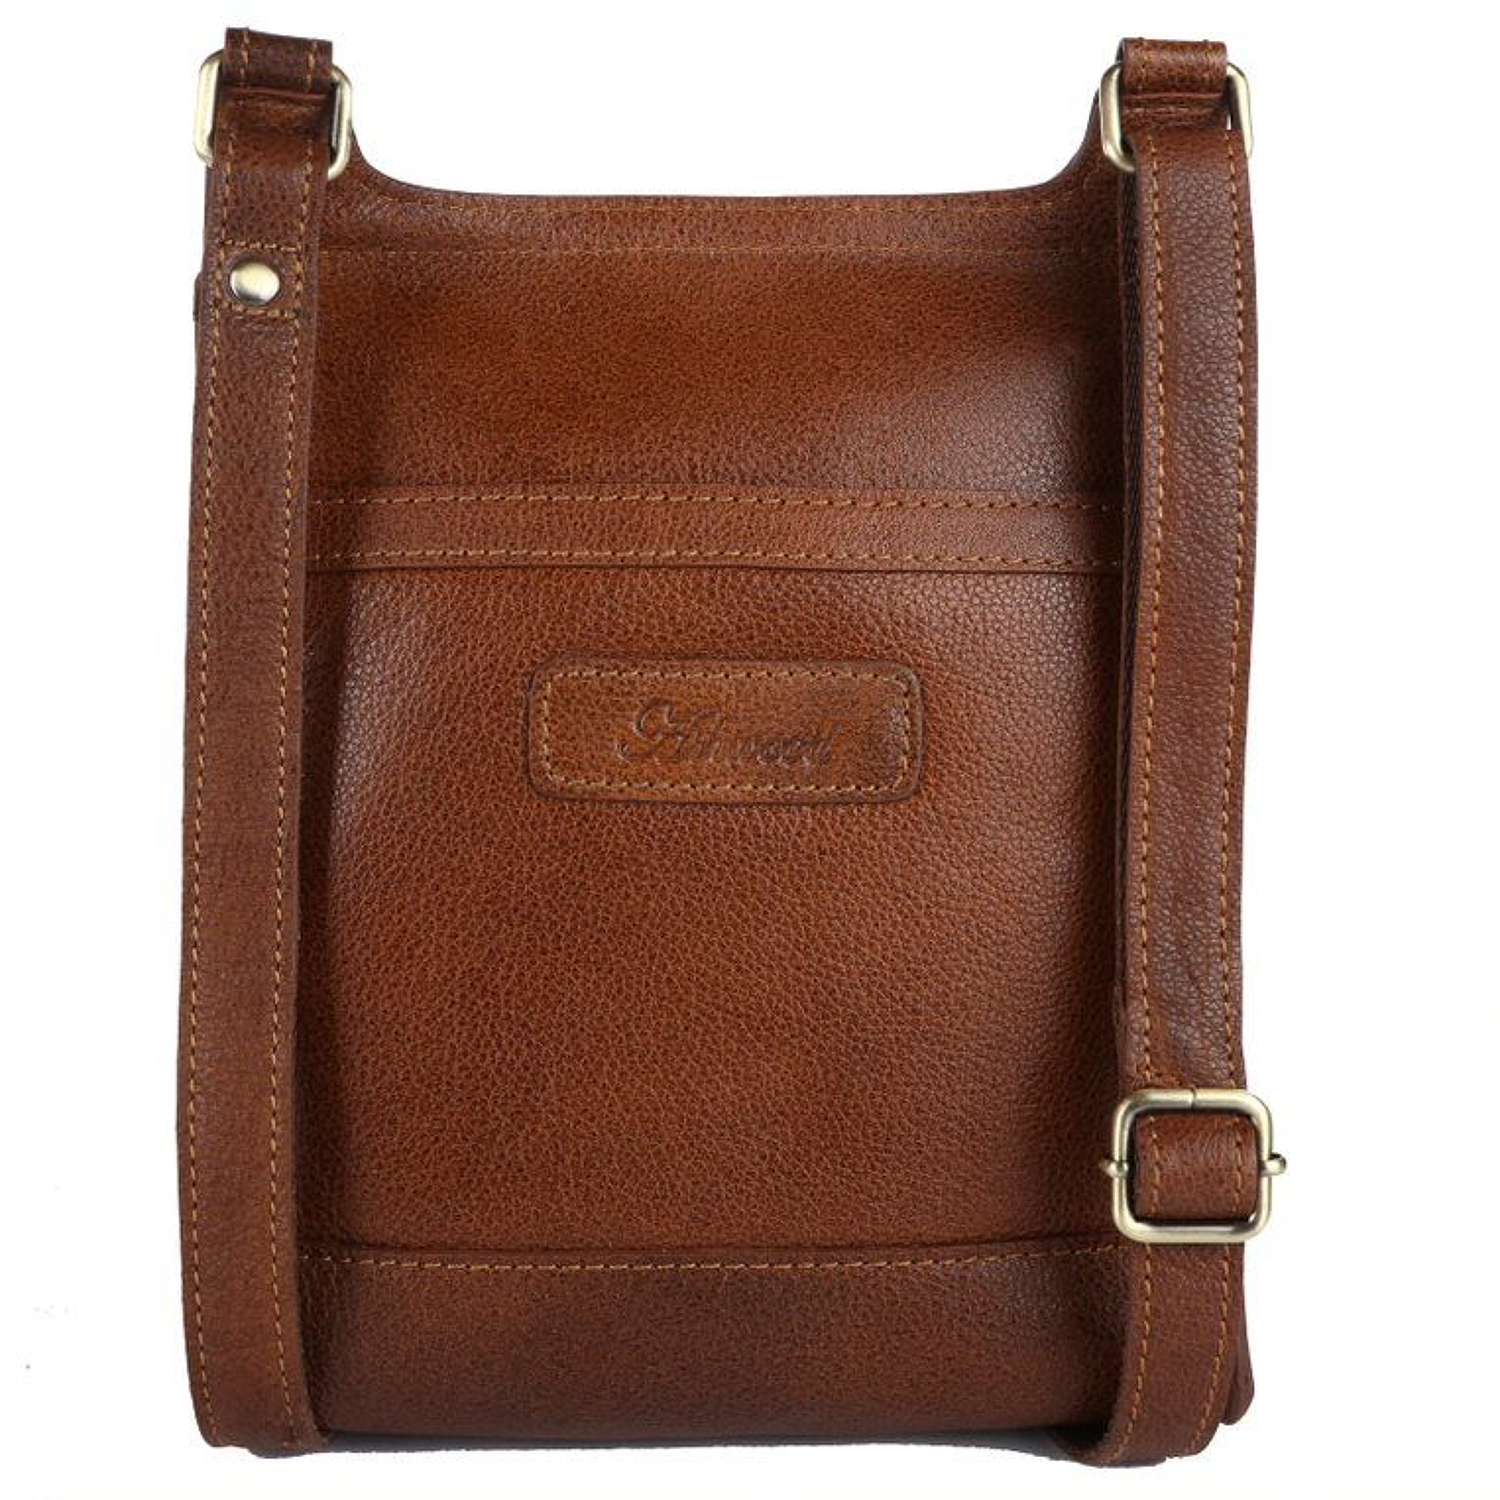 Leather Handbag Cognac M-64